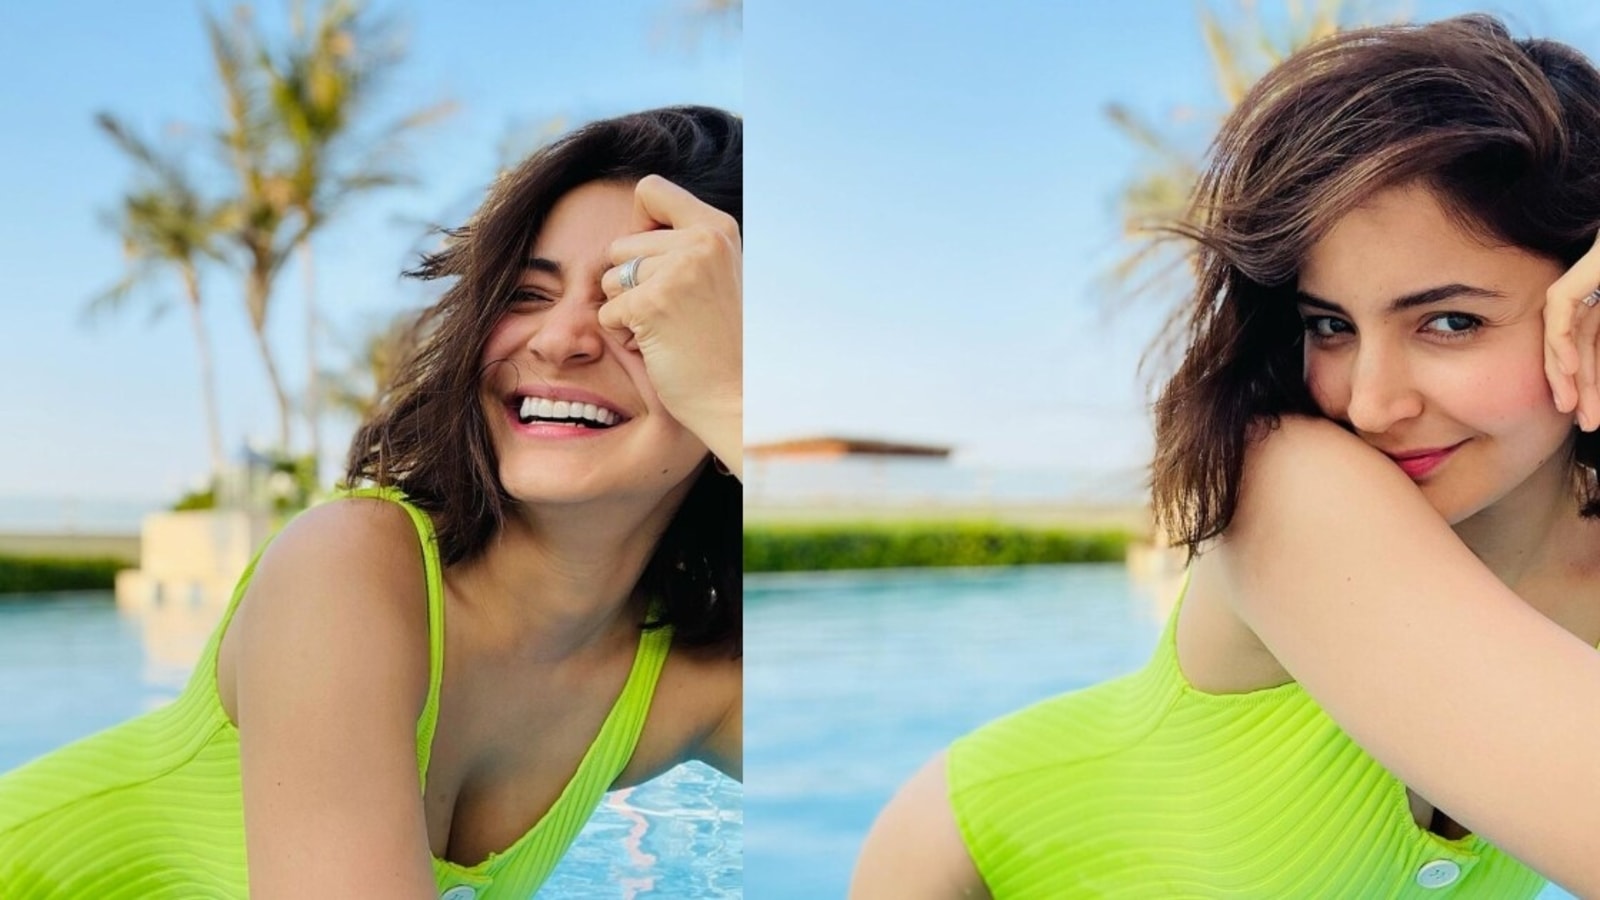 Xnxn Of Anushka - Anushka Sharma's happy pics from her sunny pool time has Virat Kohli's  heart, see pics | Bollywood - Hindustan Times